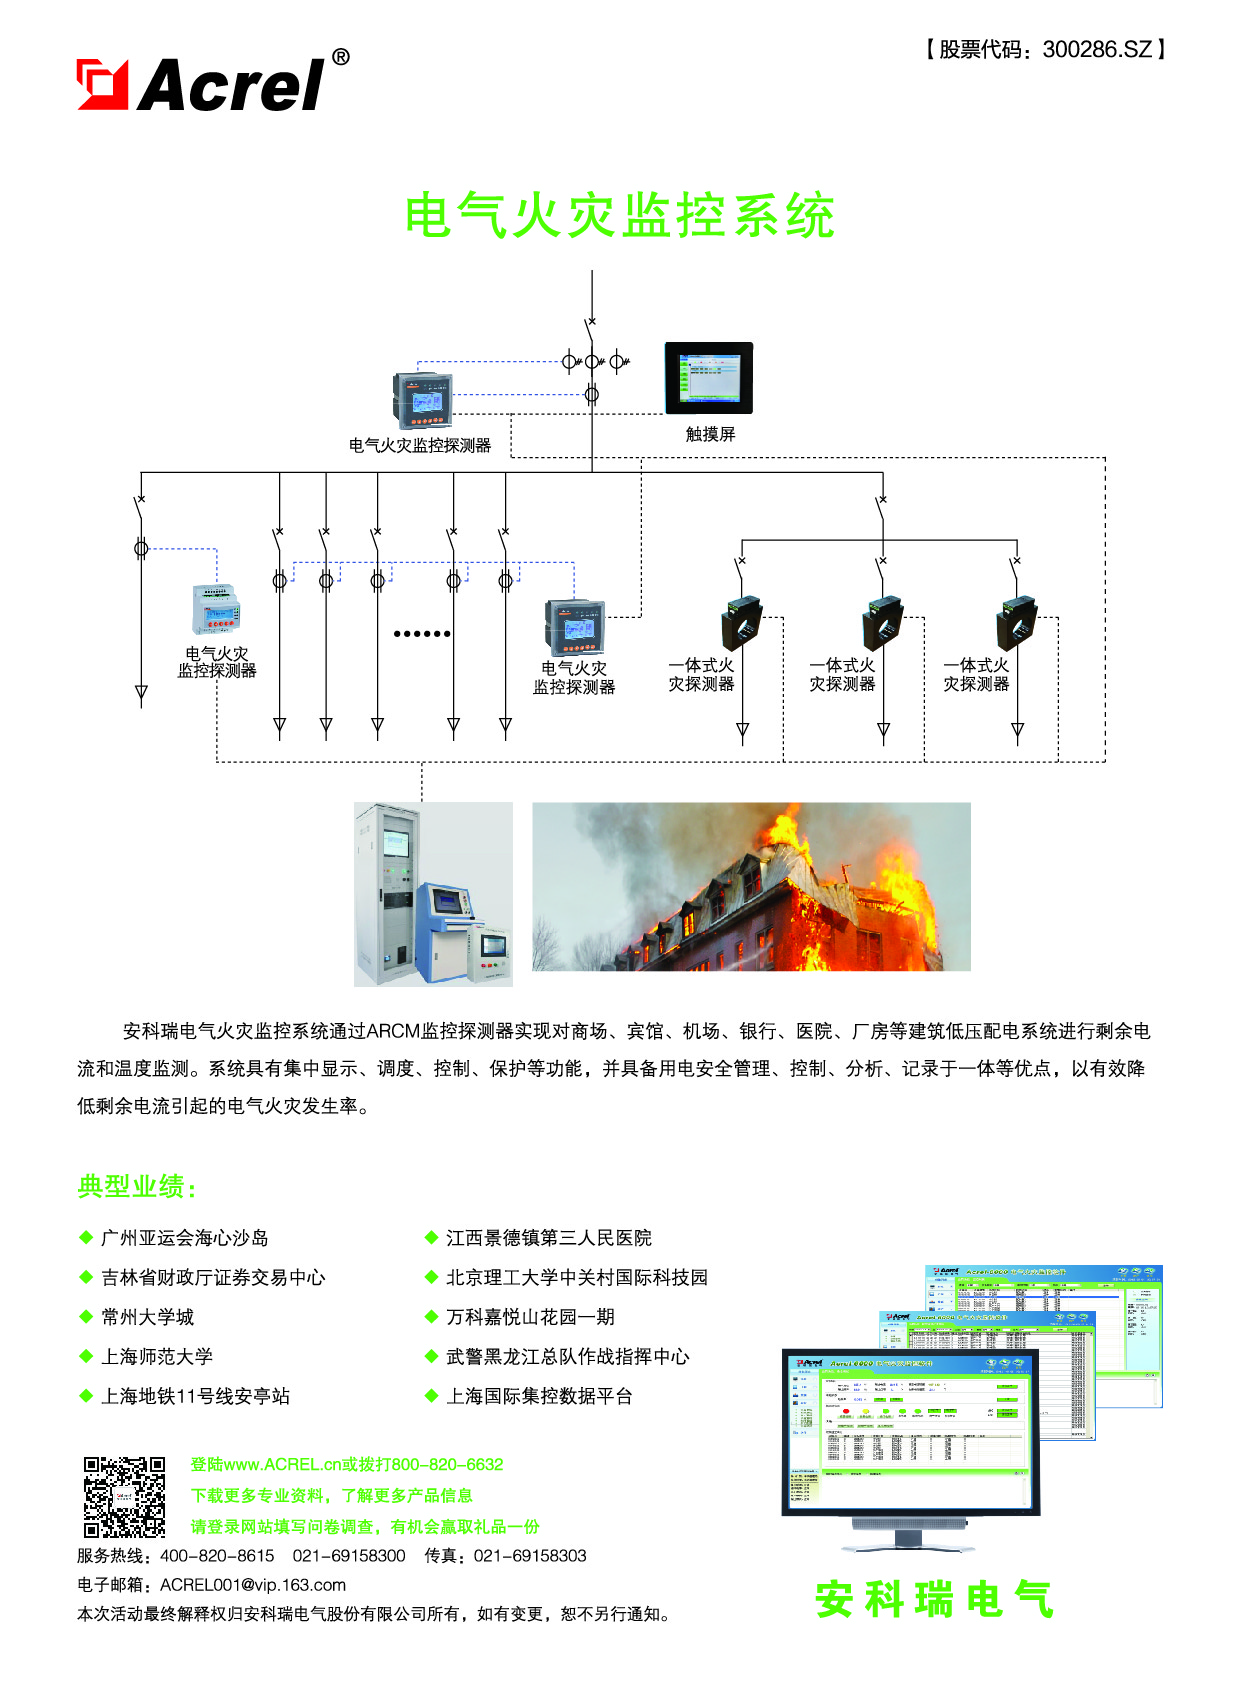 Acrel-6000/B电气火灾监控系统在天合光能（上海）有限公司研发中心项目的应用